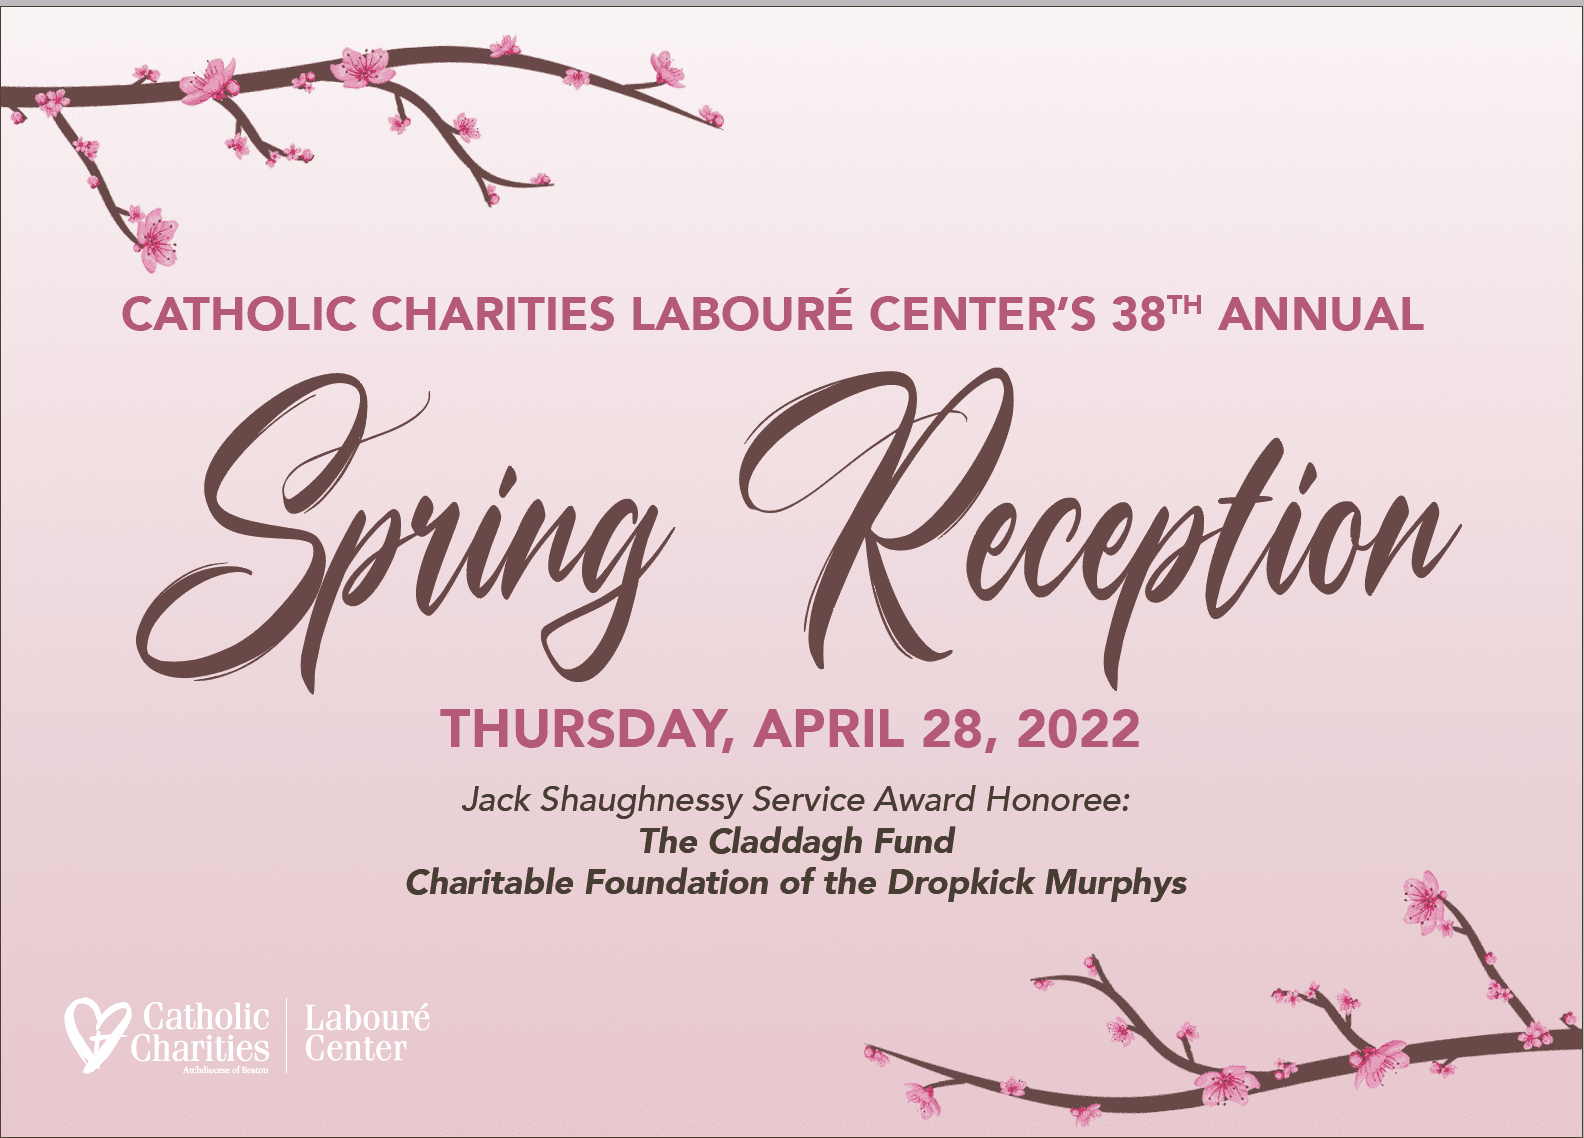 Spring Reception 2022 Invitation: Thursday, April 28, 2022